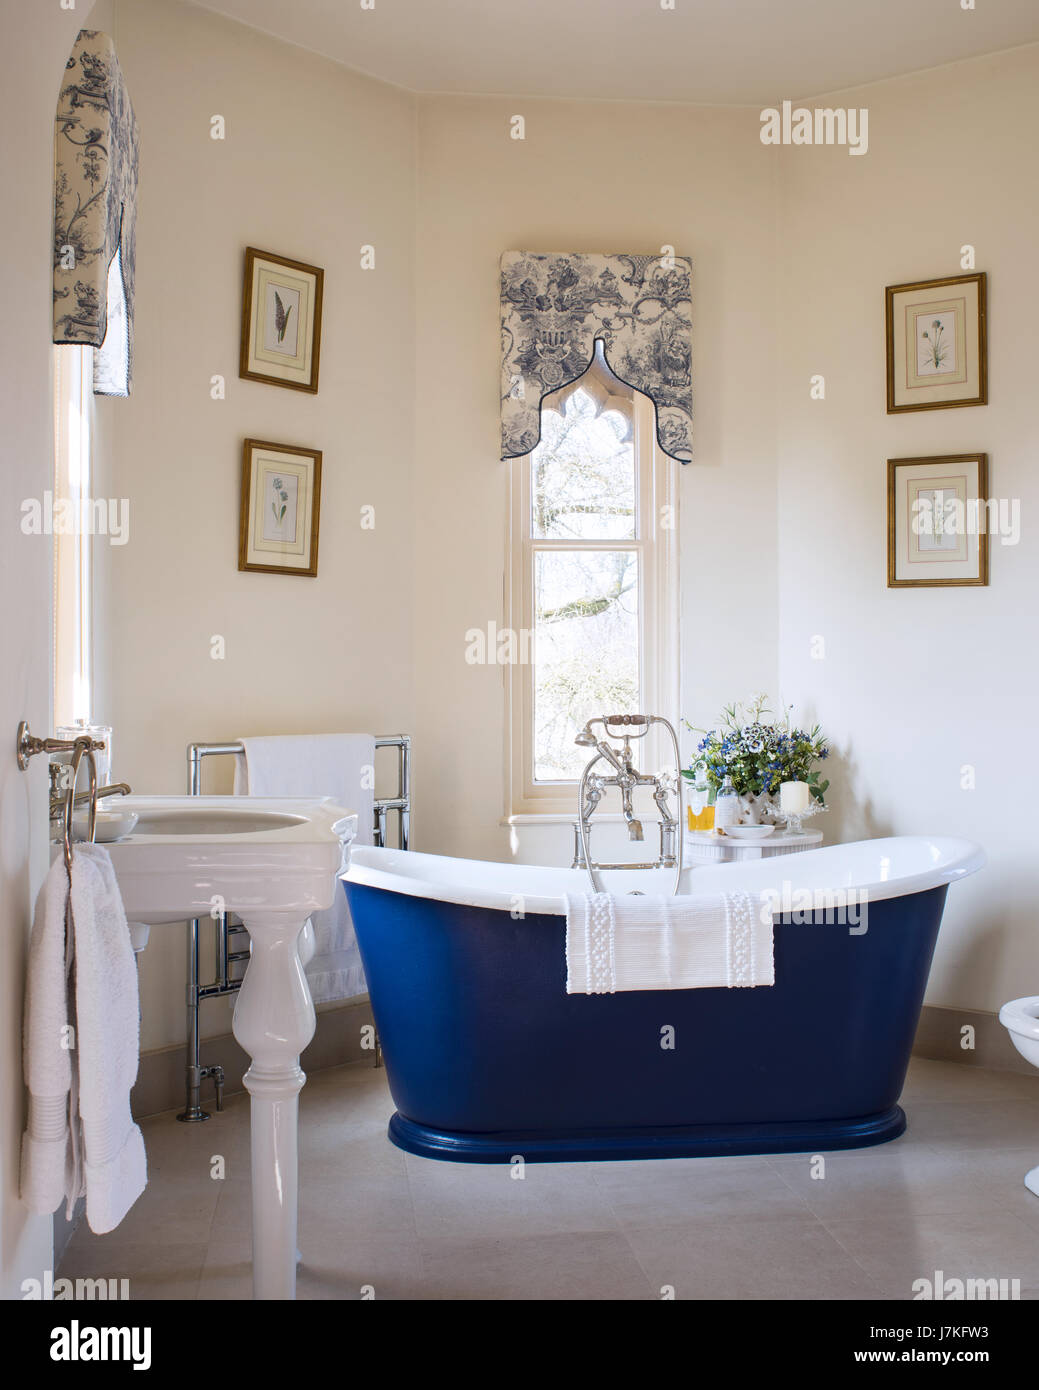 Dunkel blau freistehende Badewanne im Zimmer mit gotischen Fenstern und Toile De Jouy Muster Schabracken Stockfoto